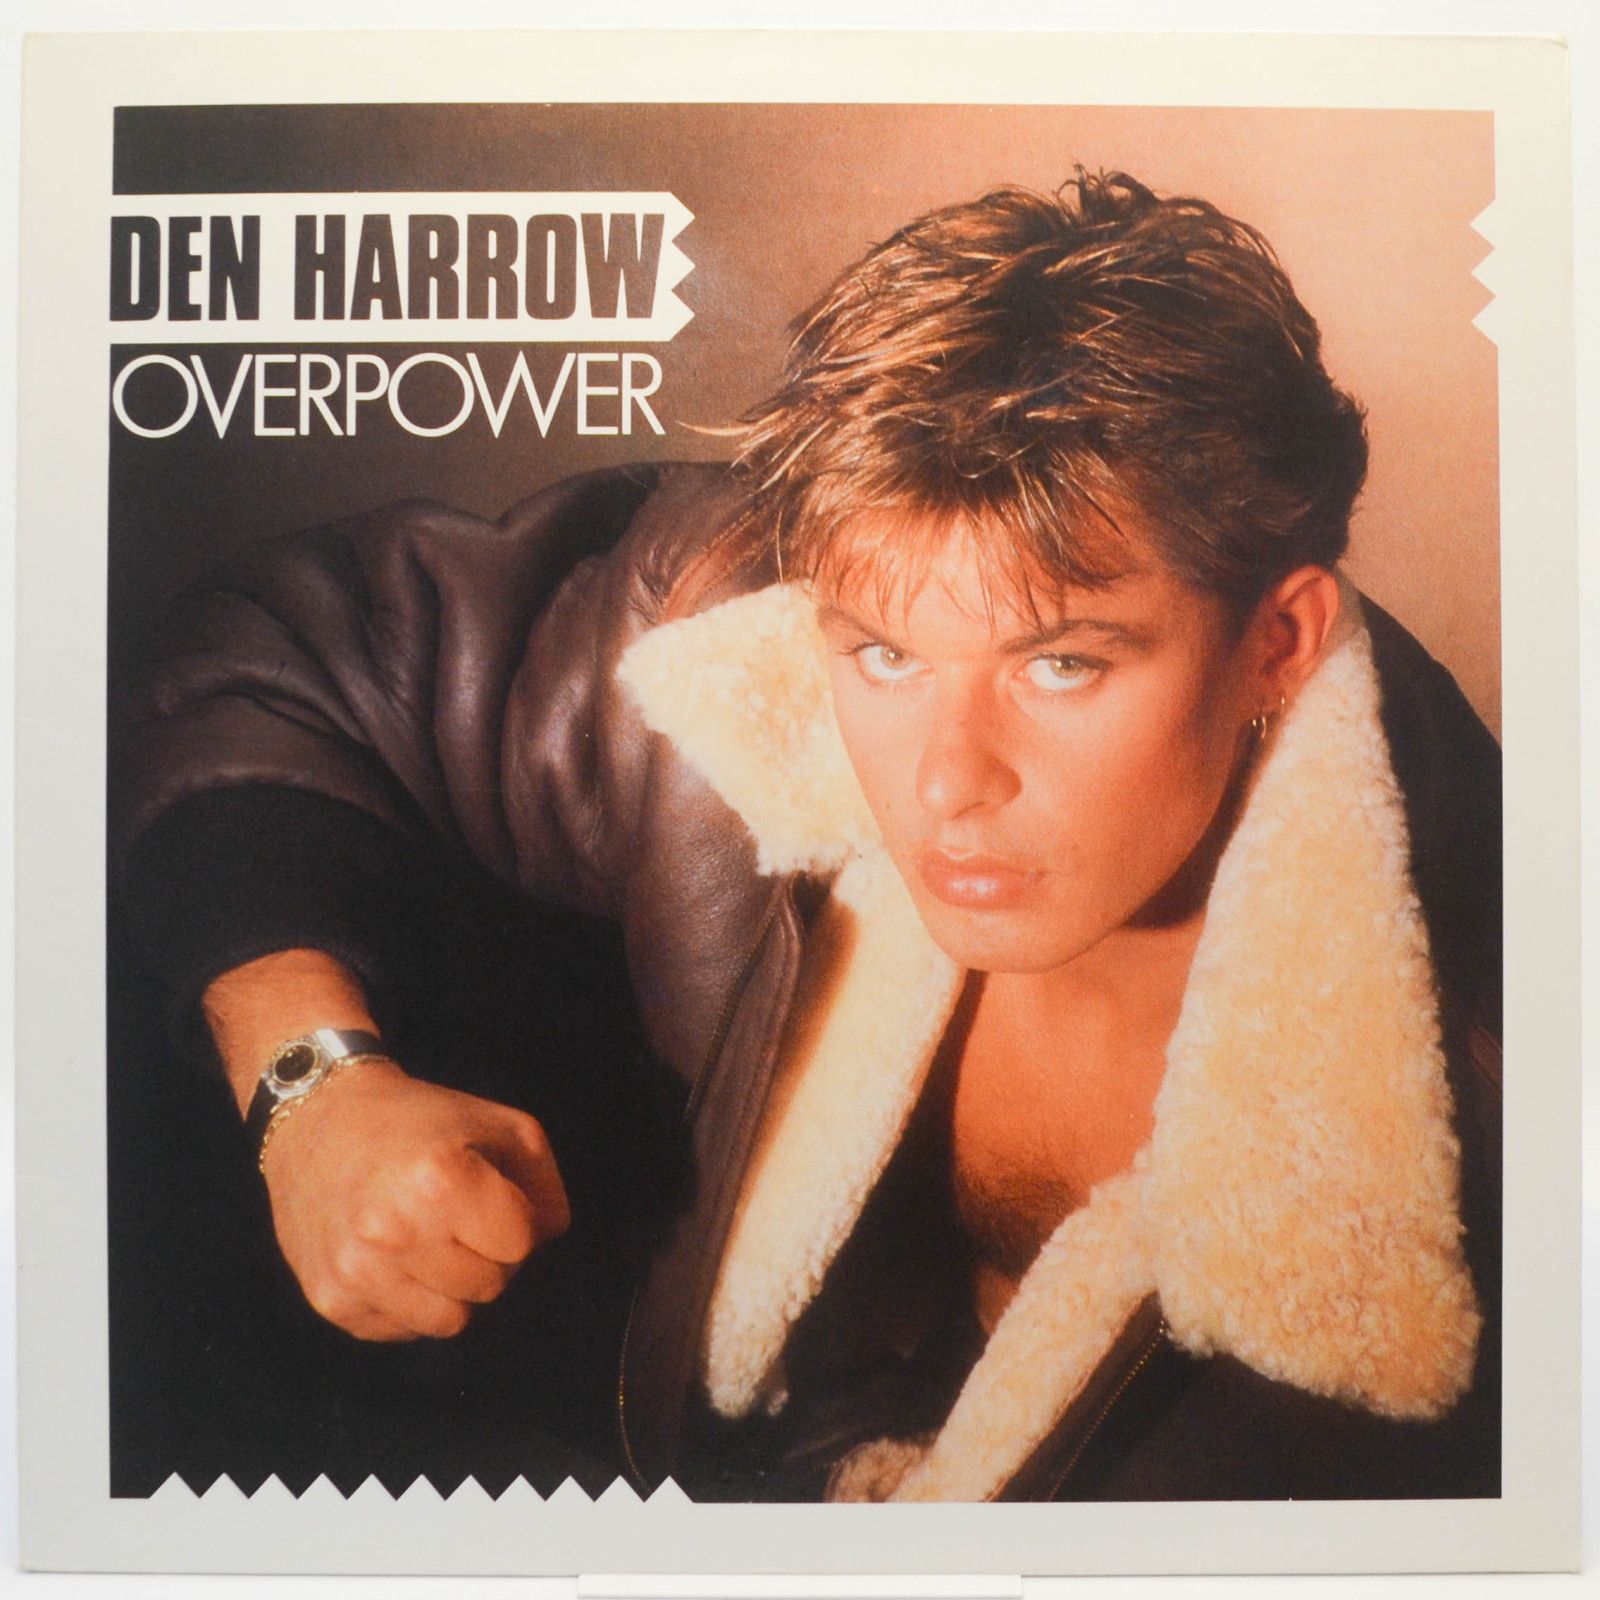 Den Harrow — Overpower, 1986